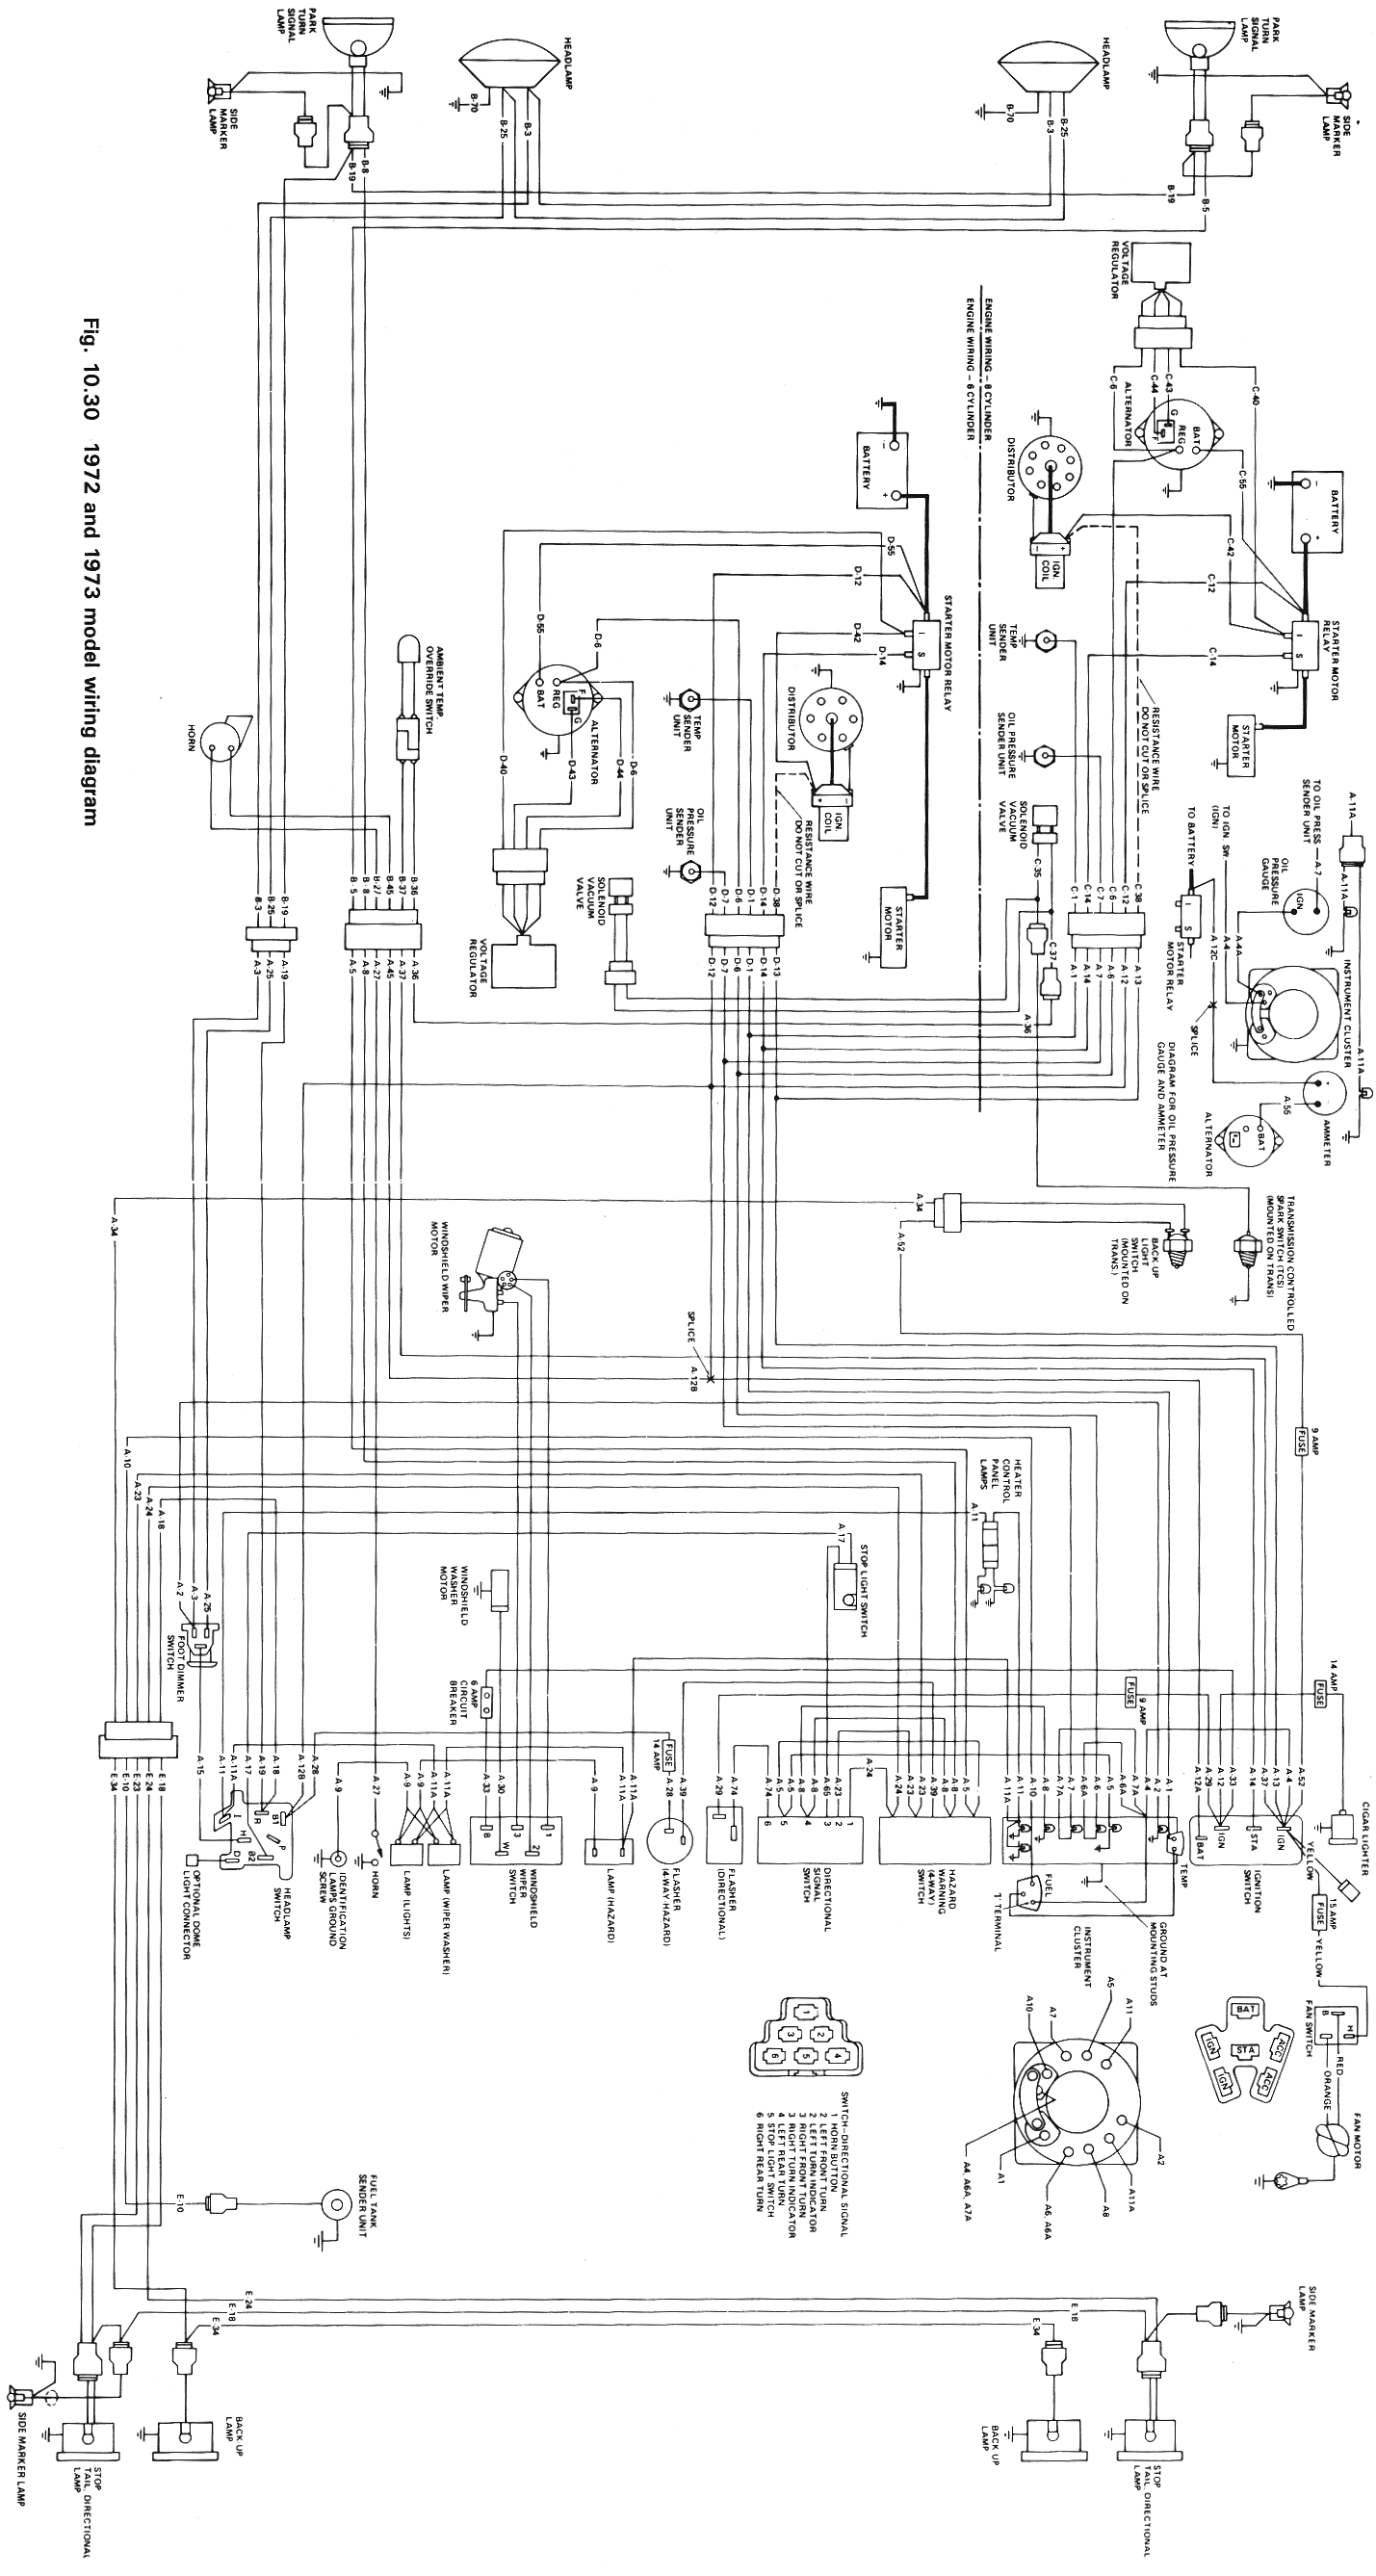 Wiring Schematics | eWillys Willys Jeep Wiring Diagram eWillys